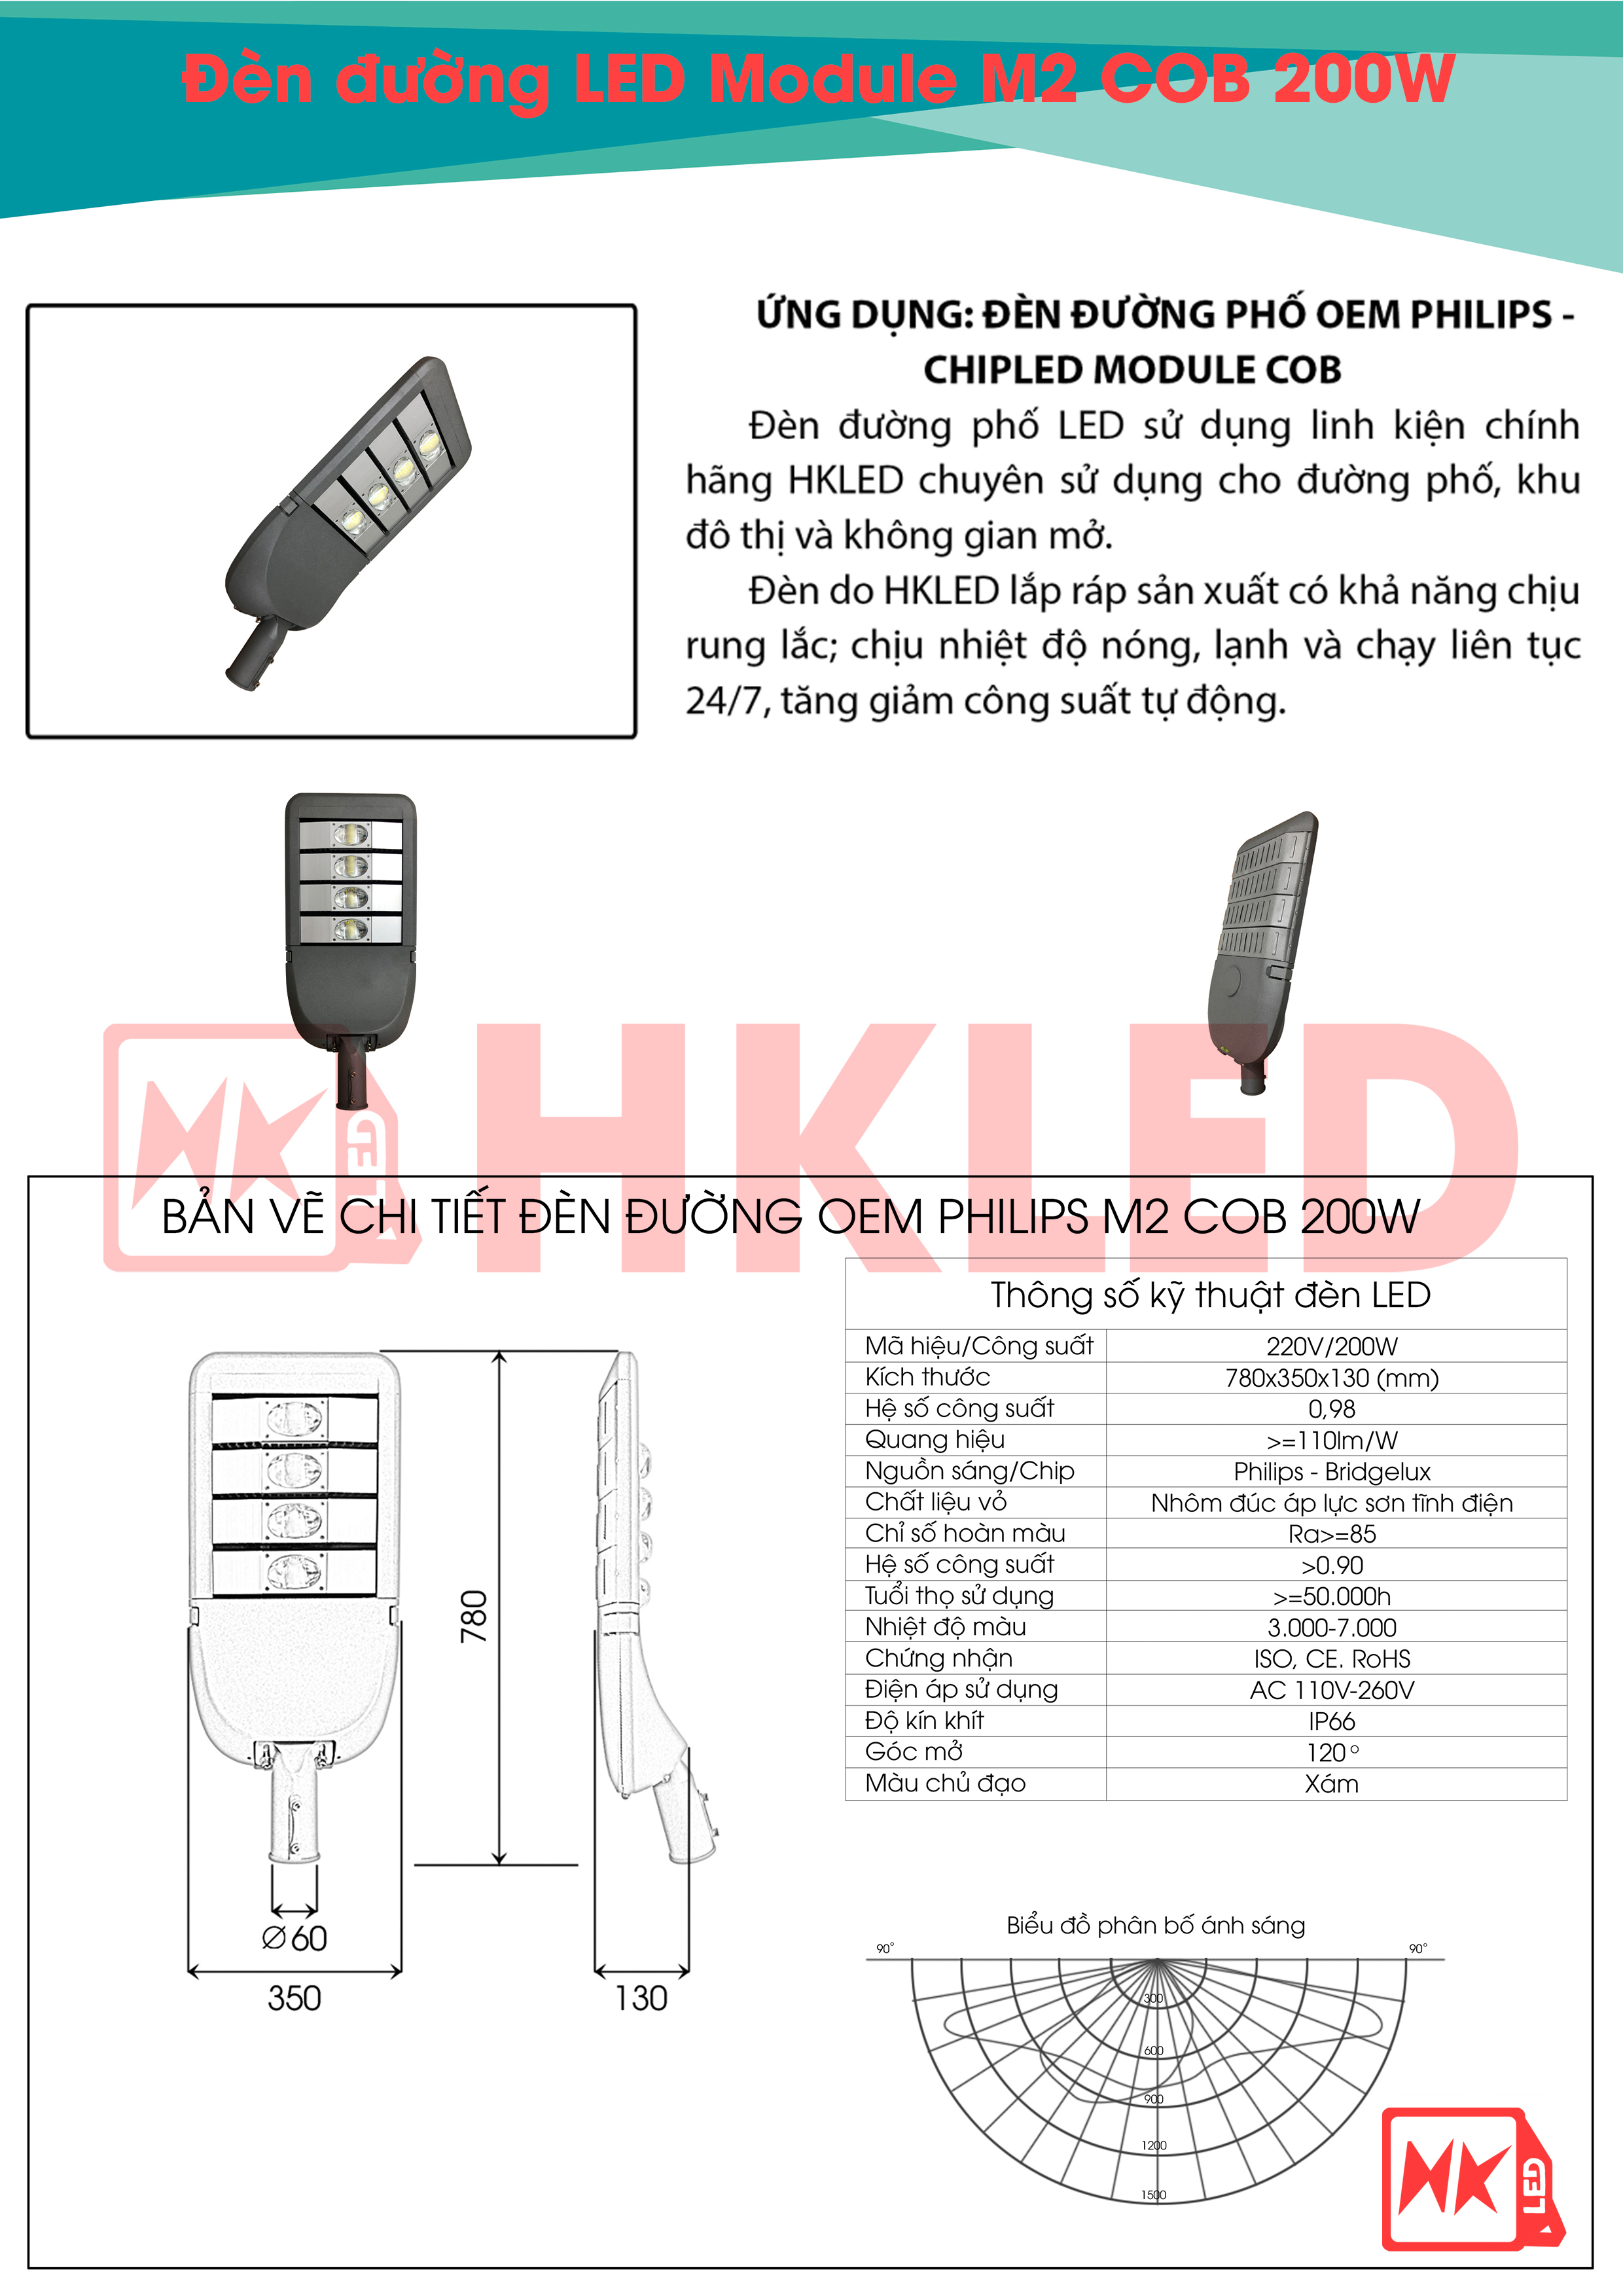 Ứng dụng, bản vẽ chi tiết và thông số kỹ thuật đèn đường LED OEM Philips M2 Module COB 200W